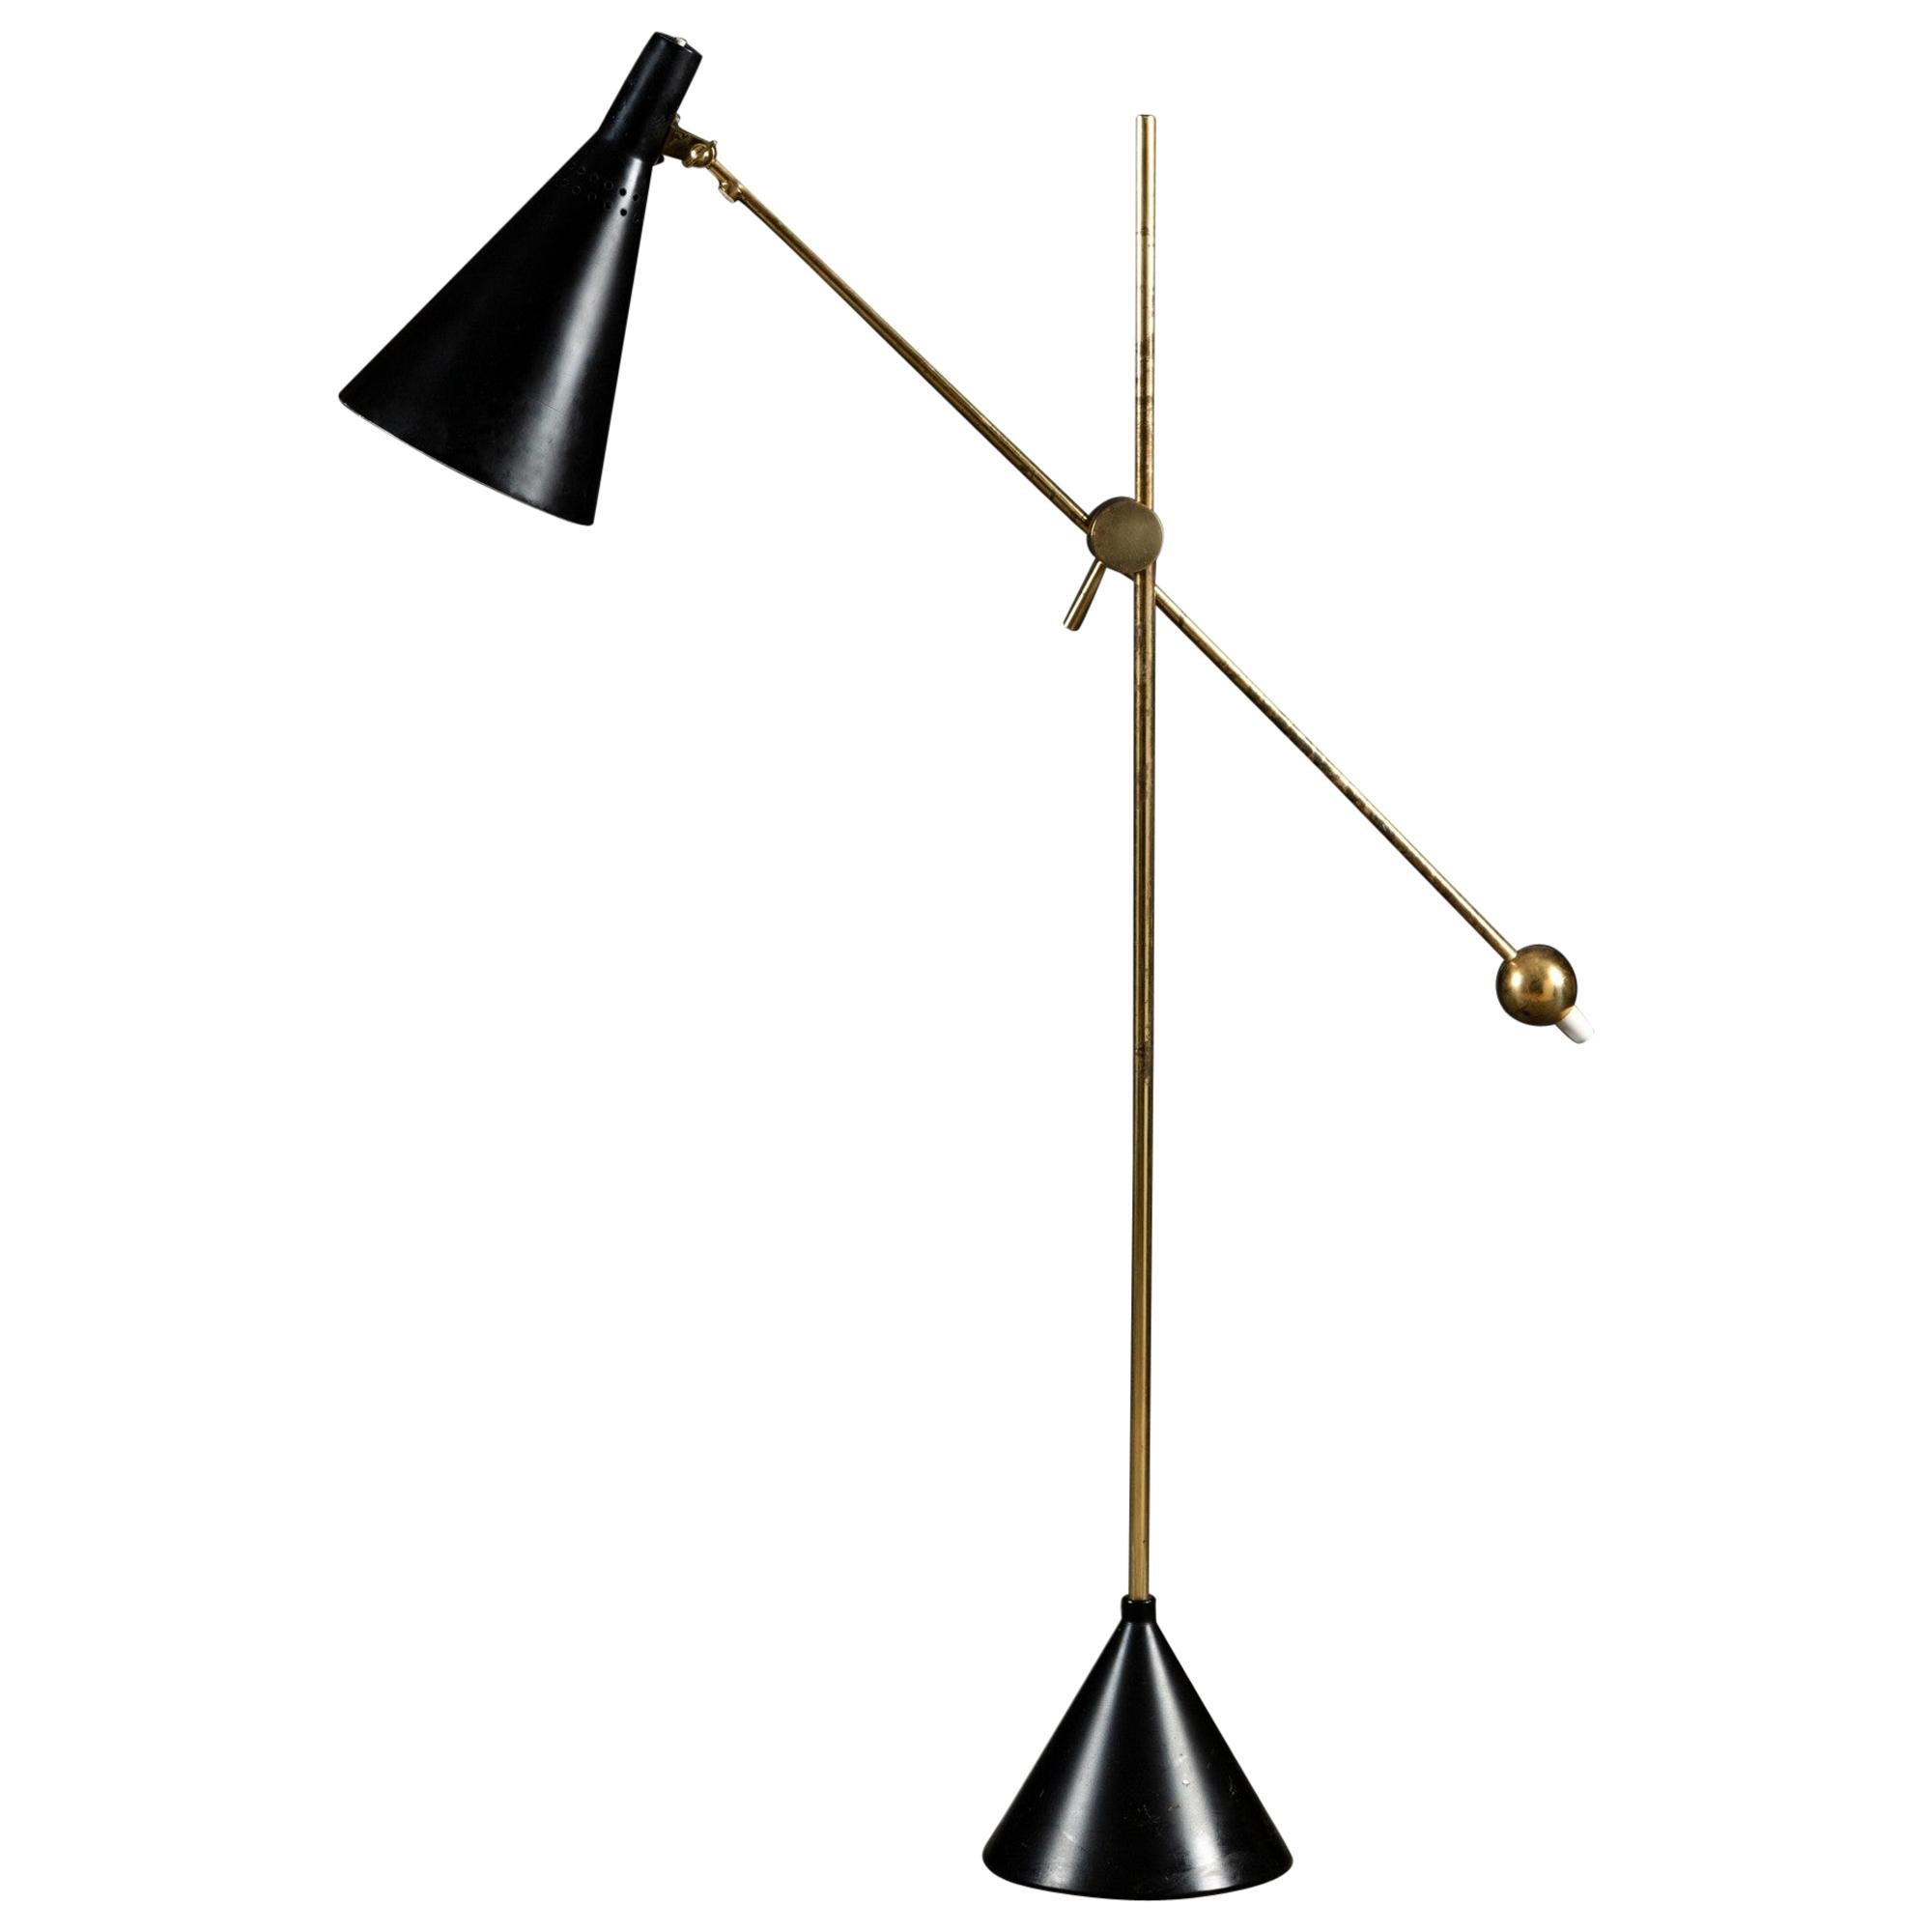 Tapio Wirkkala Model K10-11 Floor / Table Lamp, Made by Idman, Finland, 1950s